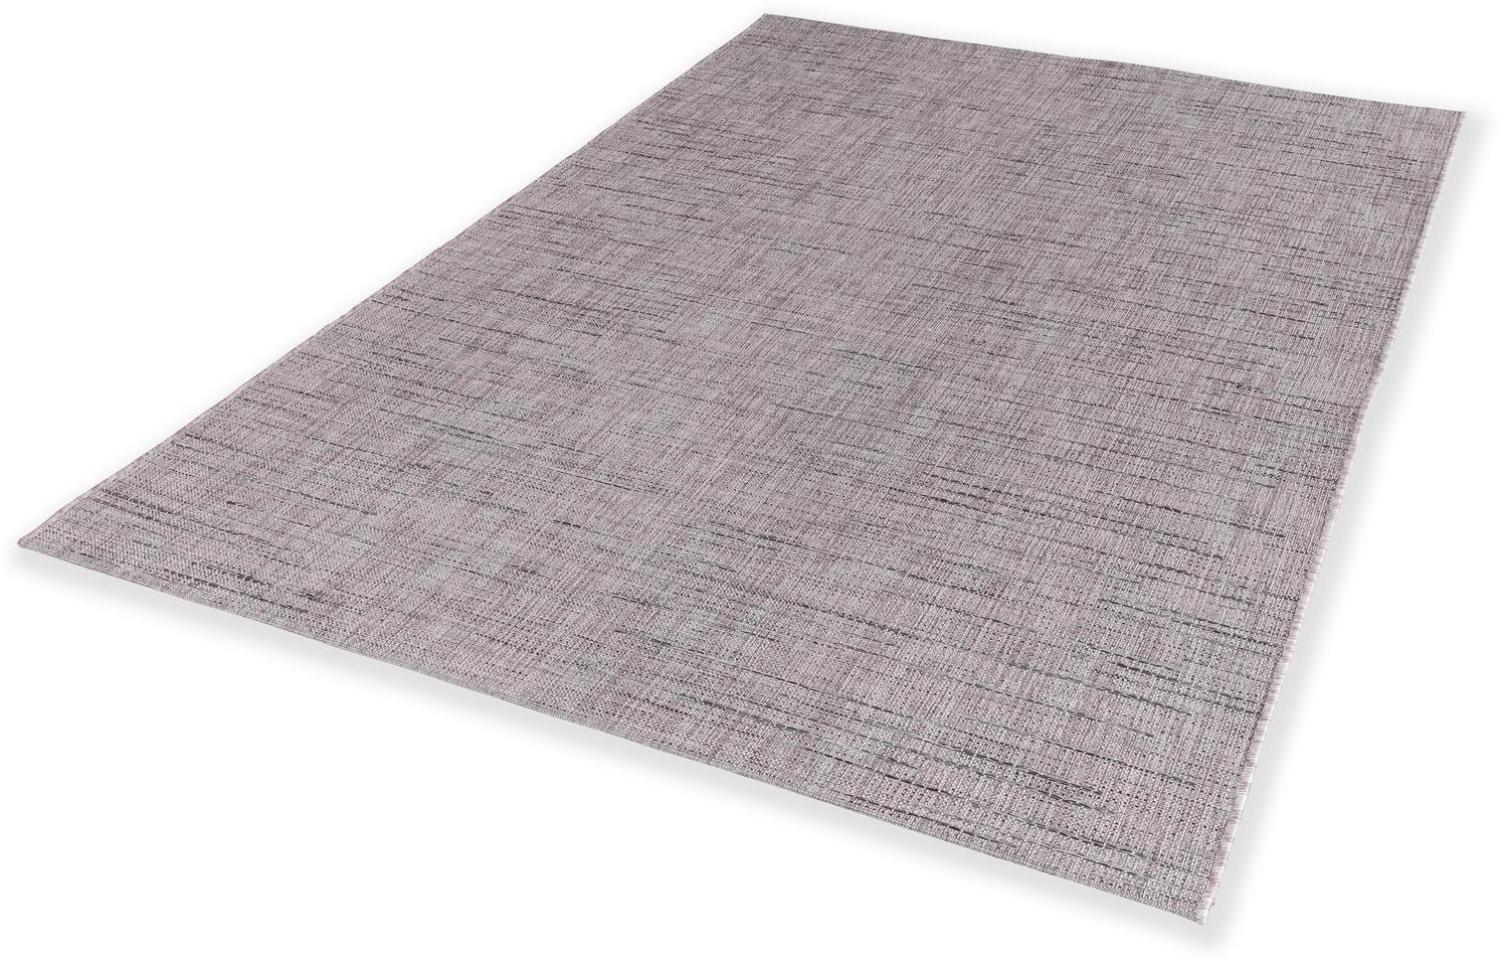 Teppich in Rosa aus 100% Polypropylen - 170x120x1cm (LxBxH) Bild 1